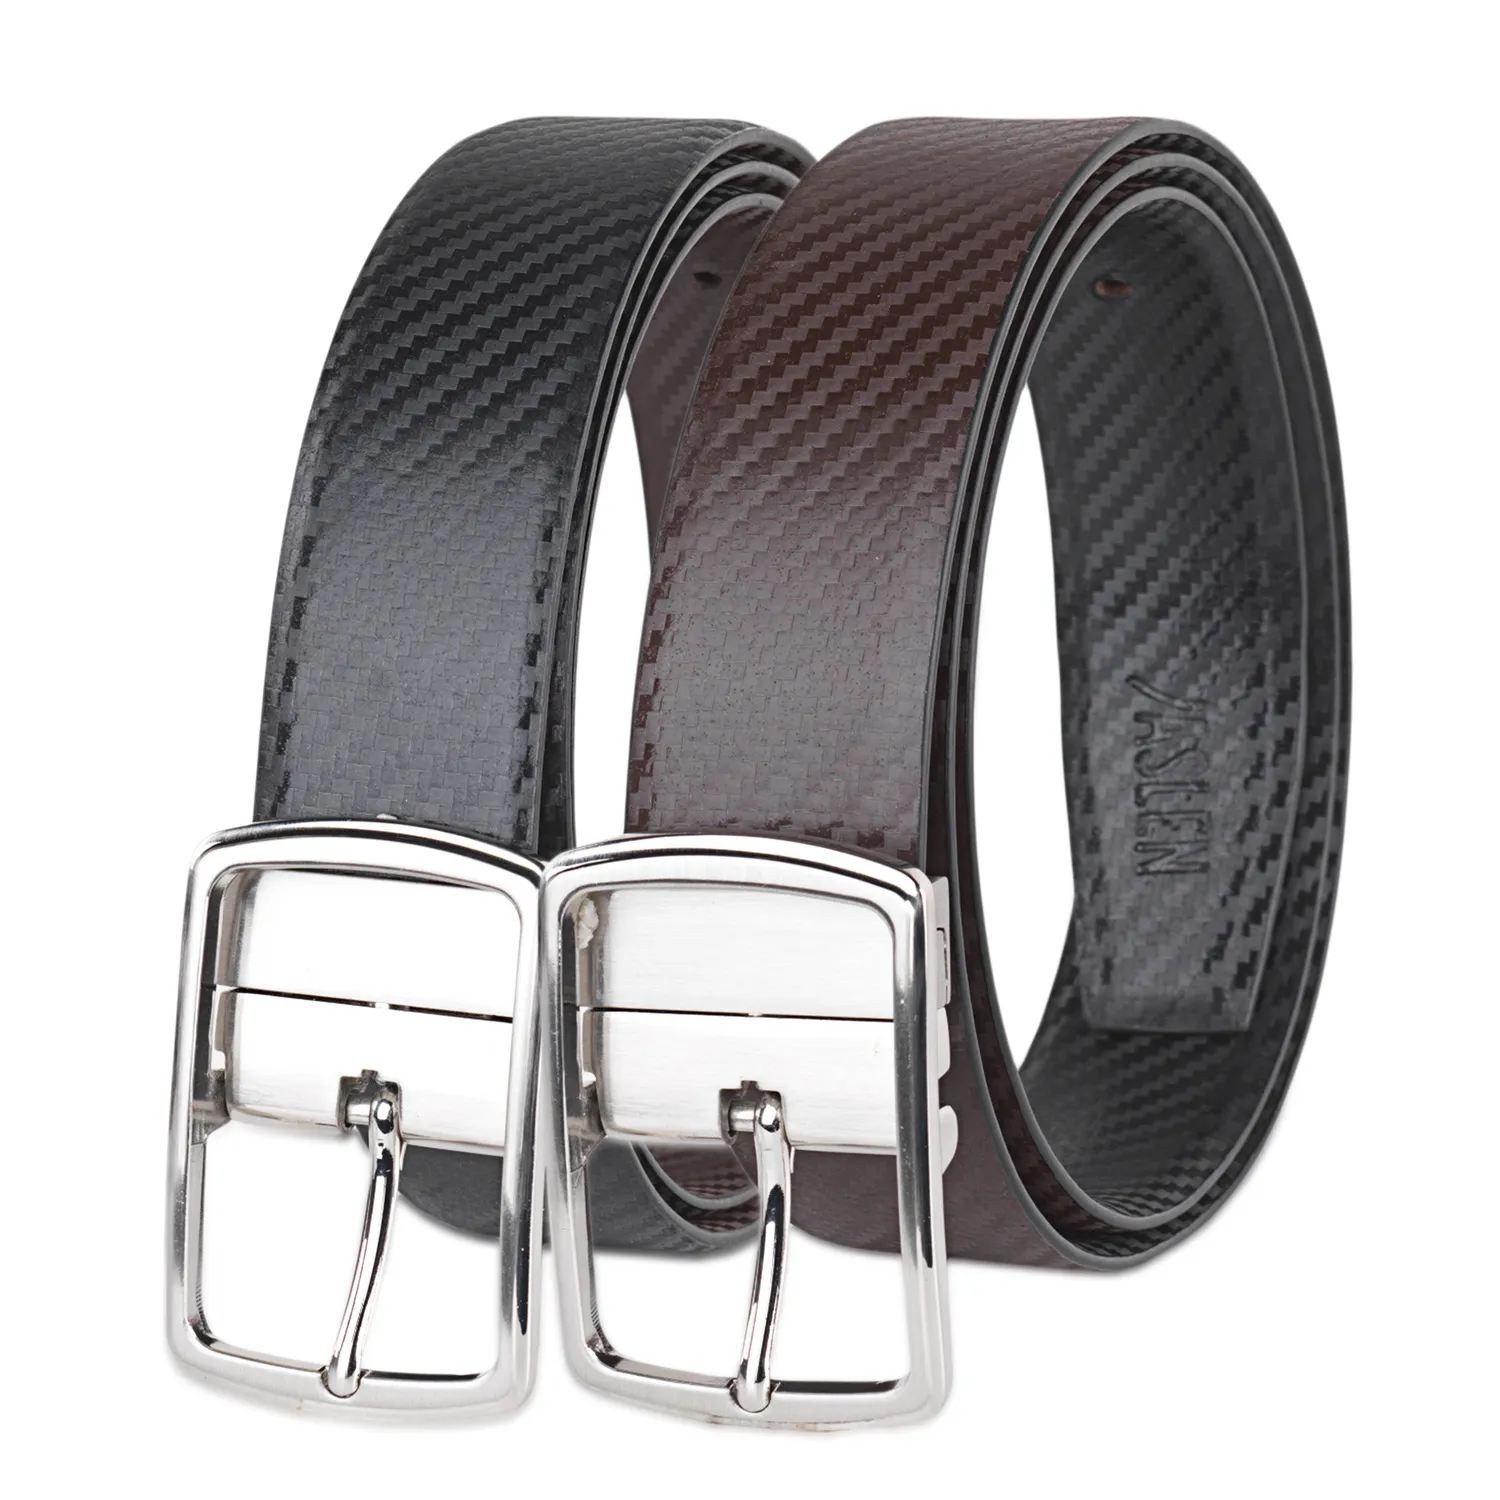 Cinturon Hombre - Cinturones Hombre De Piel Genuina Con Hebillas De Metal - Cinturón Hombre. Cinturon Reversible - Elegantes Cinturones Hombre Cuero Marca JASLEN 49915 | Miravia